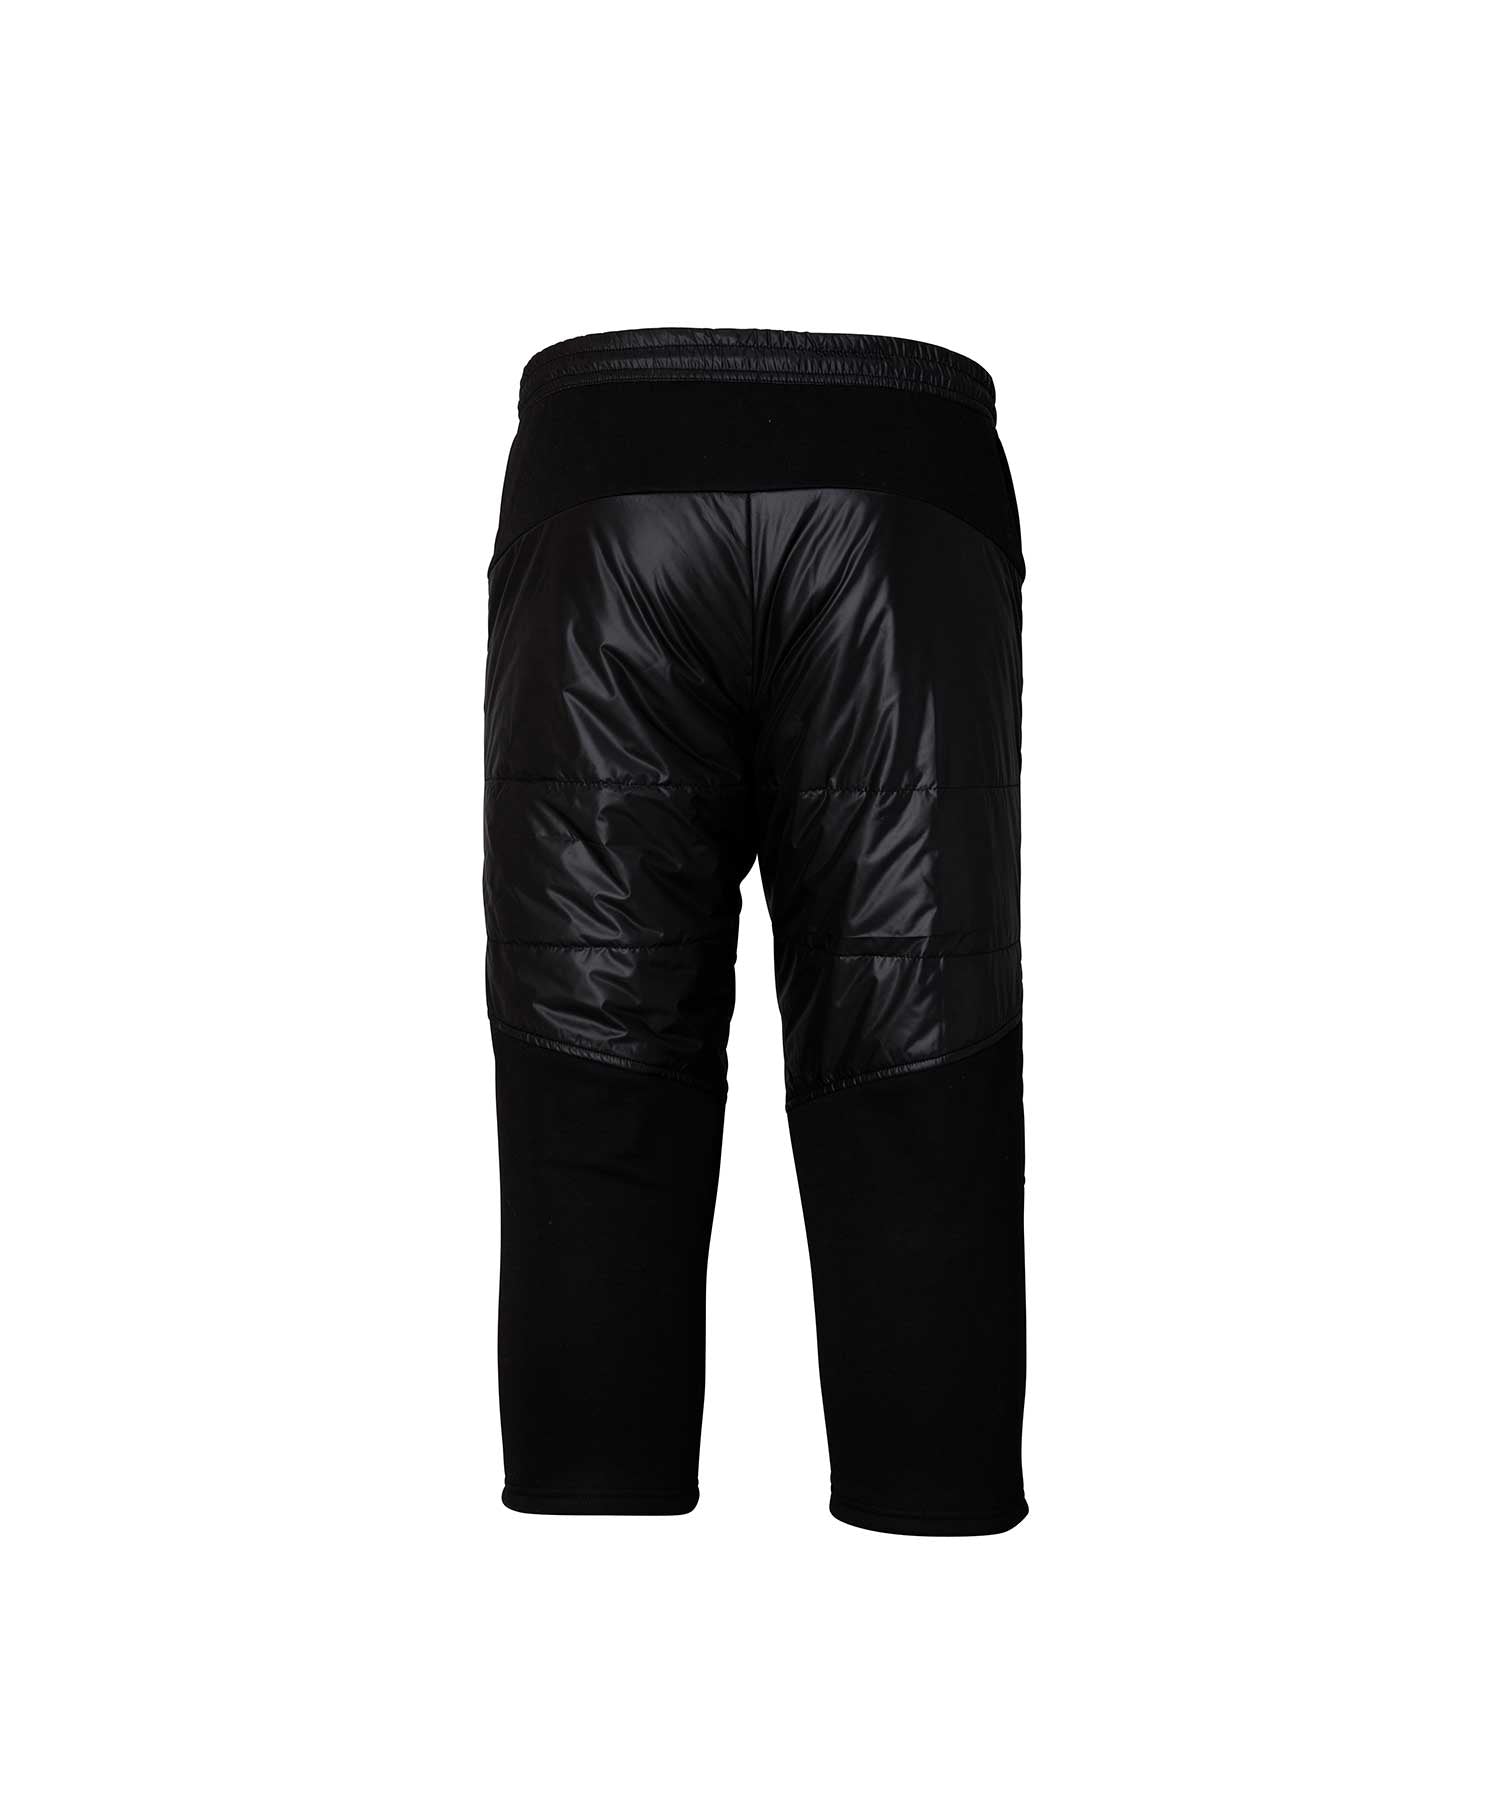 MENS】スキーウェア ボトムス パンツ Insulation Mid Pants / Alpine 